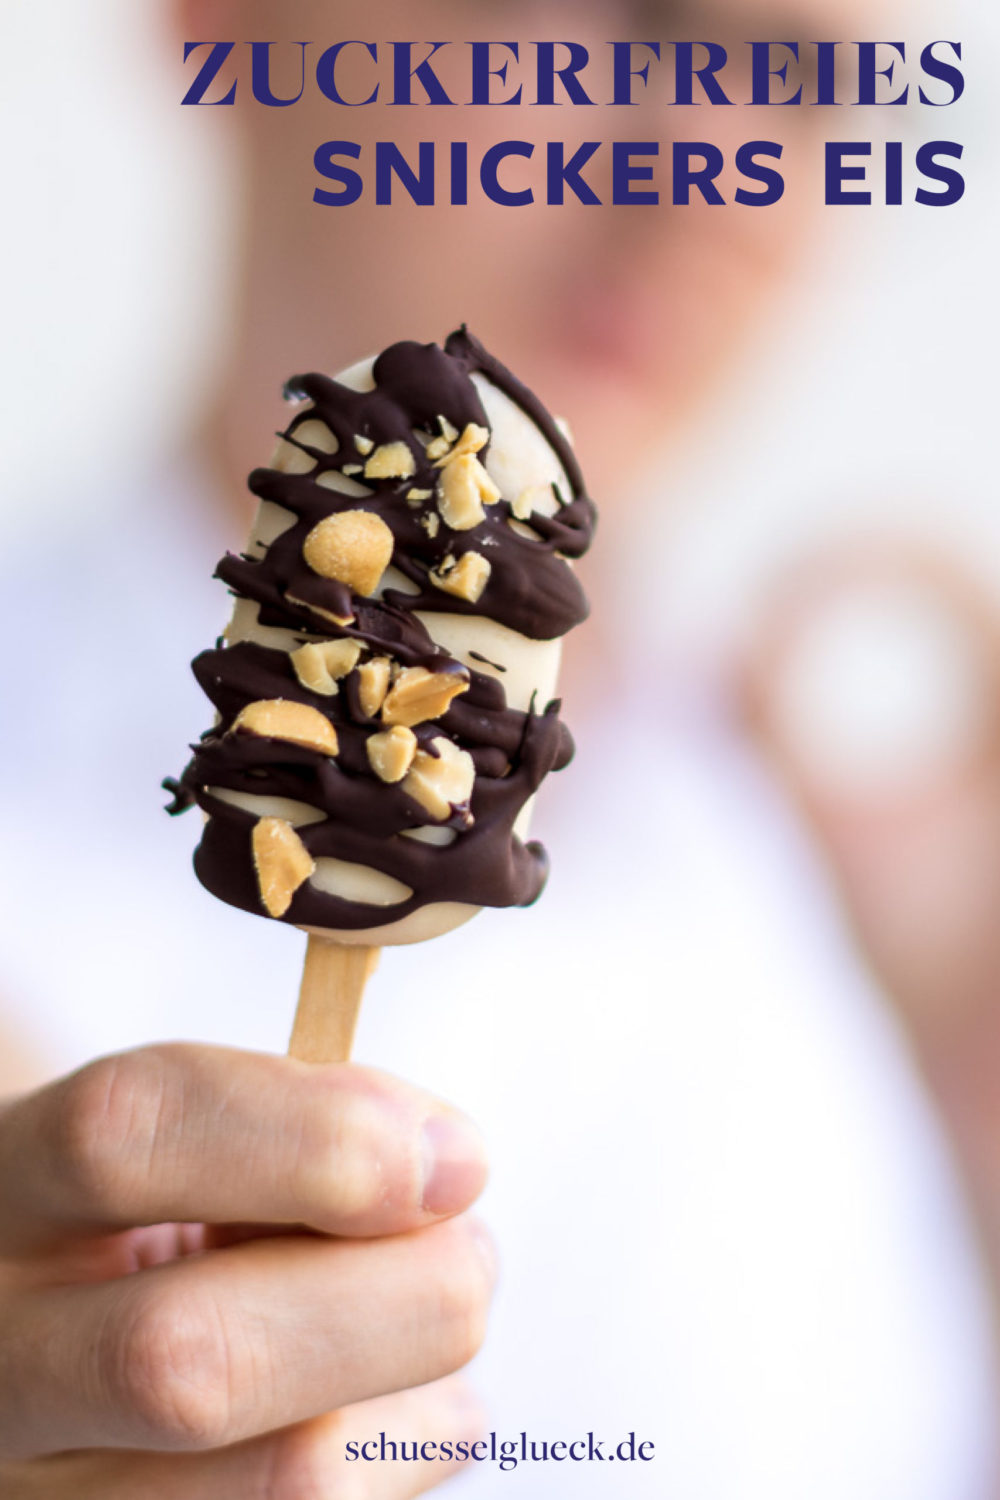 Gesundes Snickers Eis am Stiel – kinderleicht und flott gemacht!